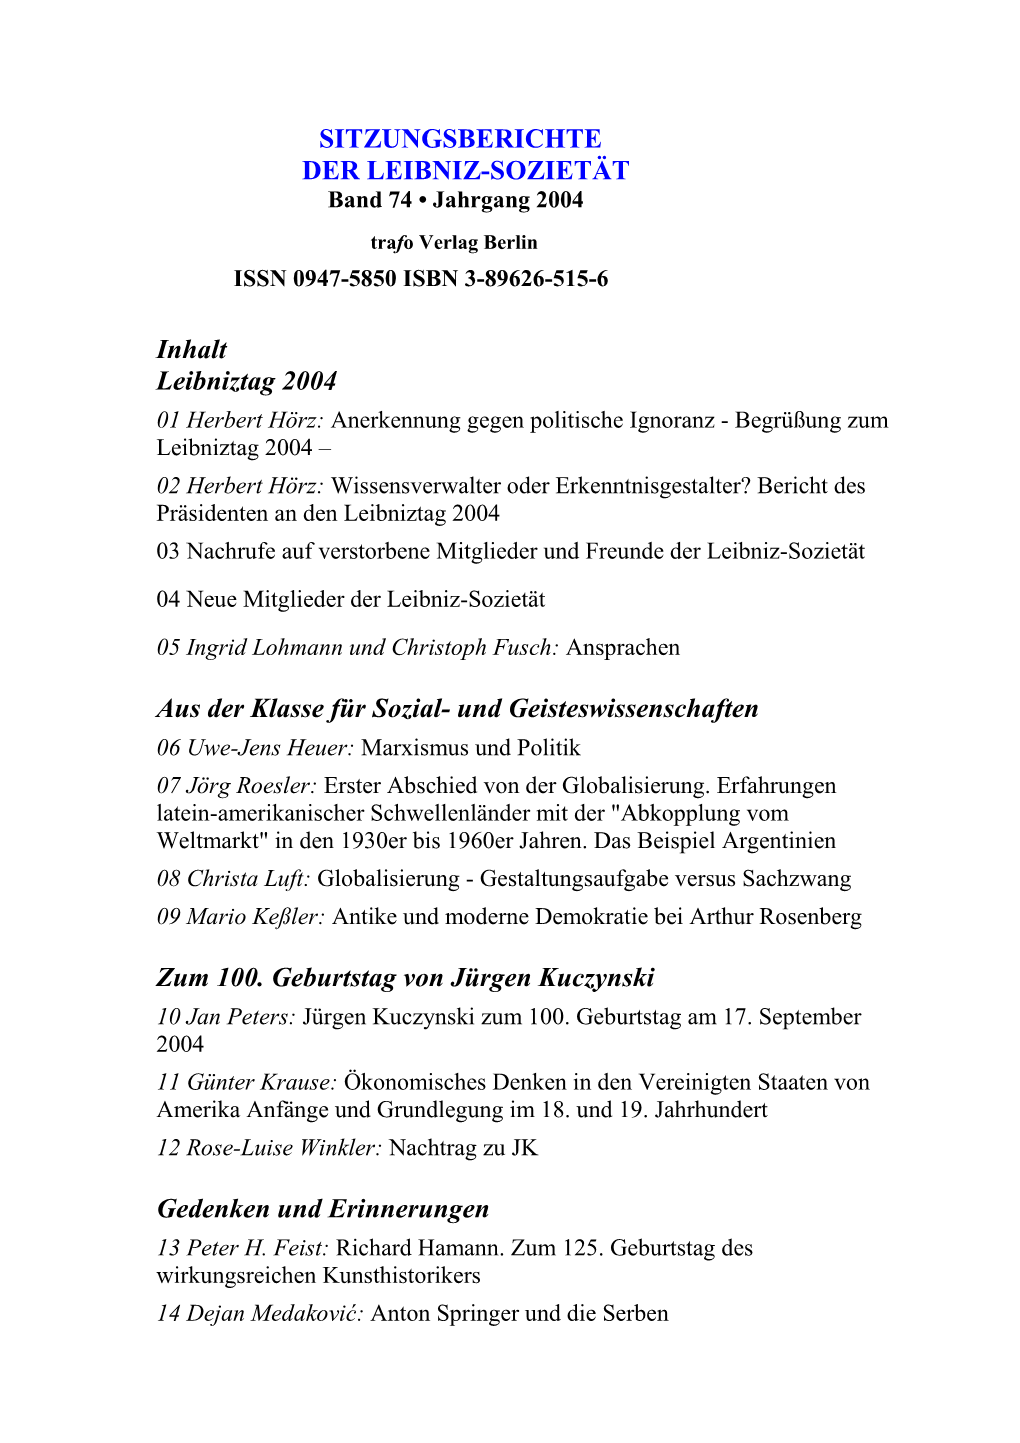 Sitzungsberichte Der Leibniz-Sozietät, Jahrgang 2004, Band 74